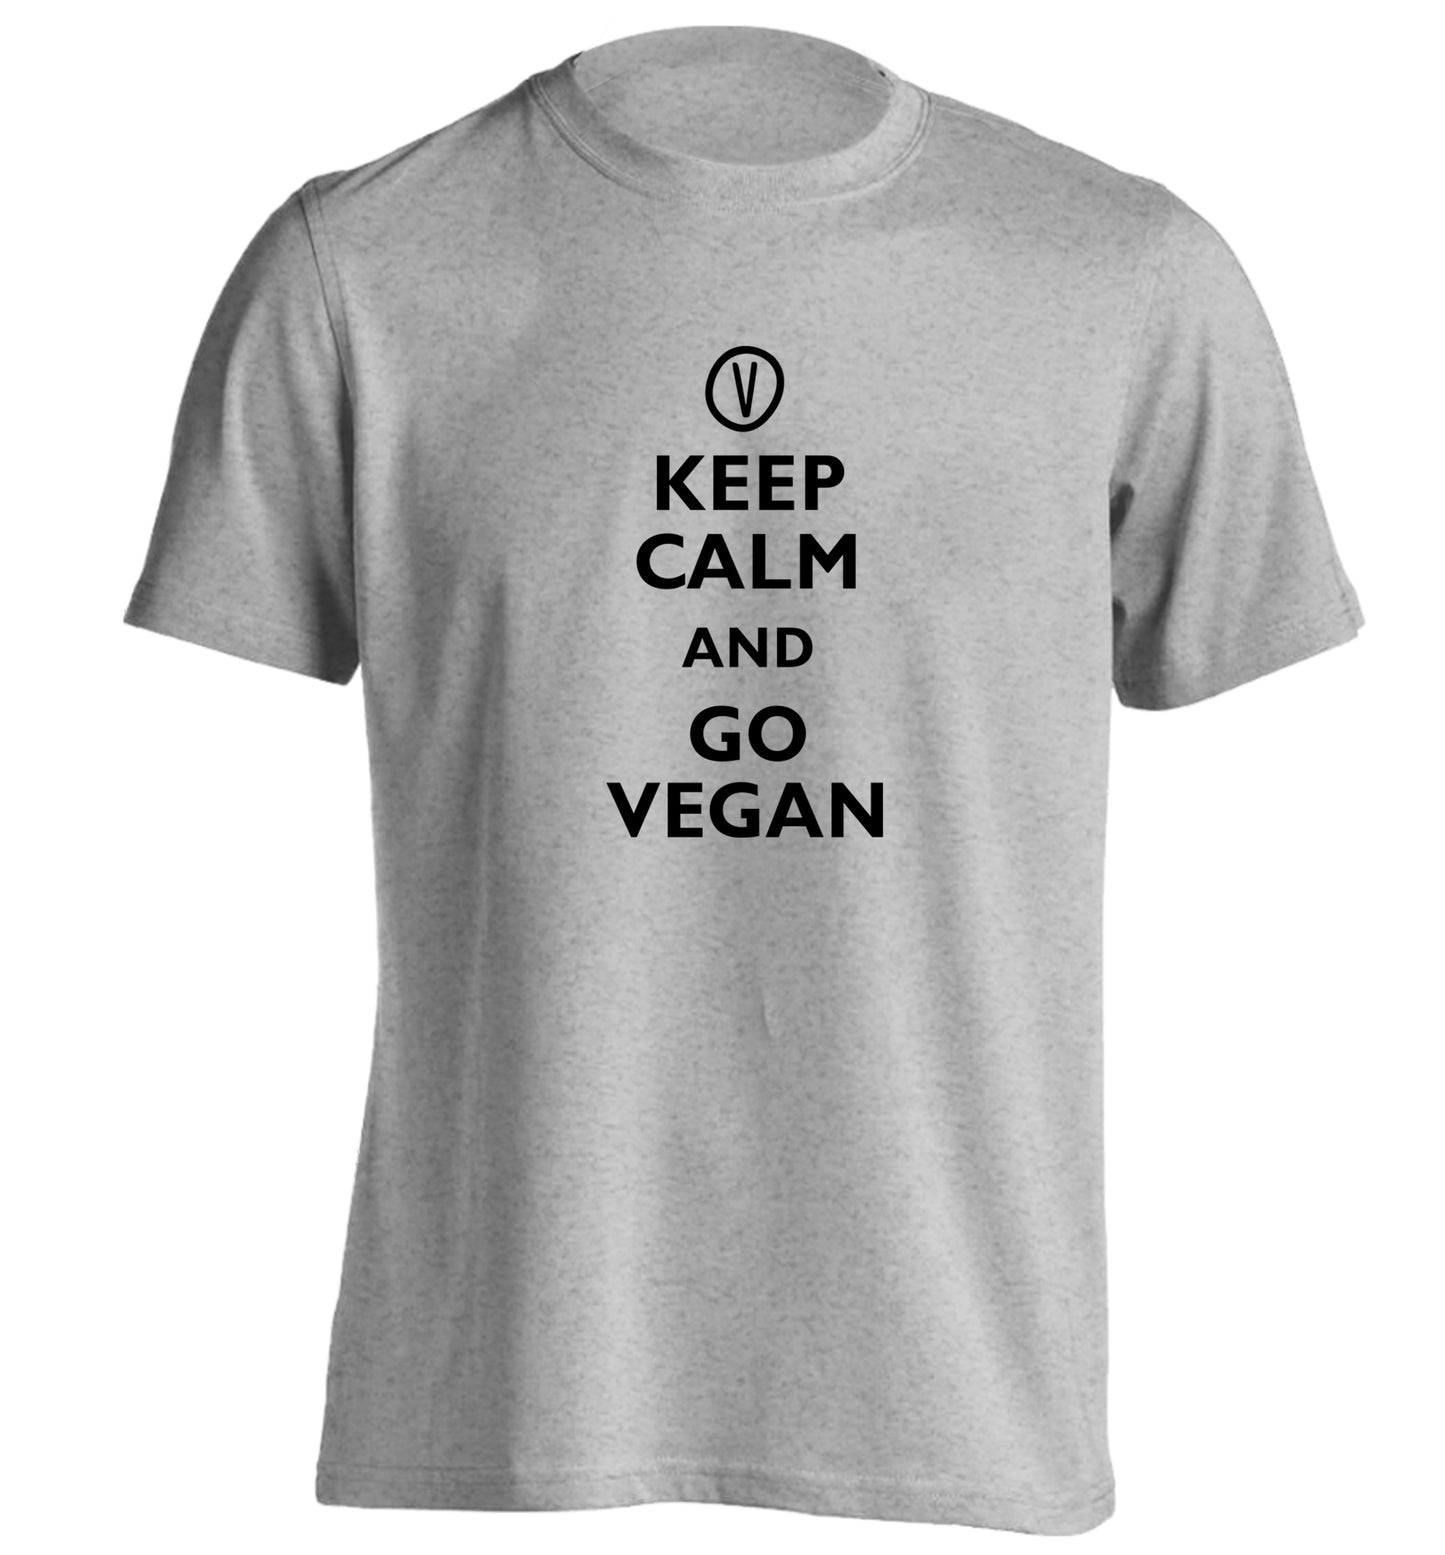 Keep calm and go vegan adults unisex grey Tshirt 2XL